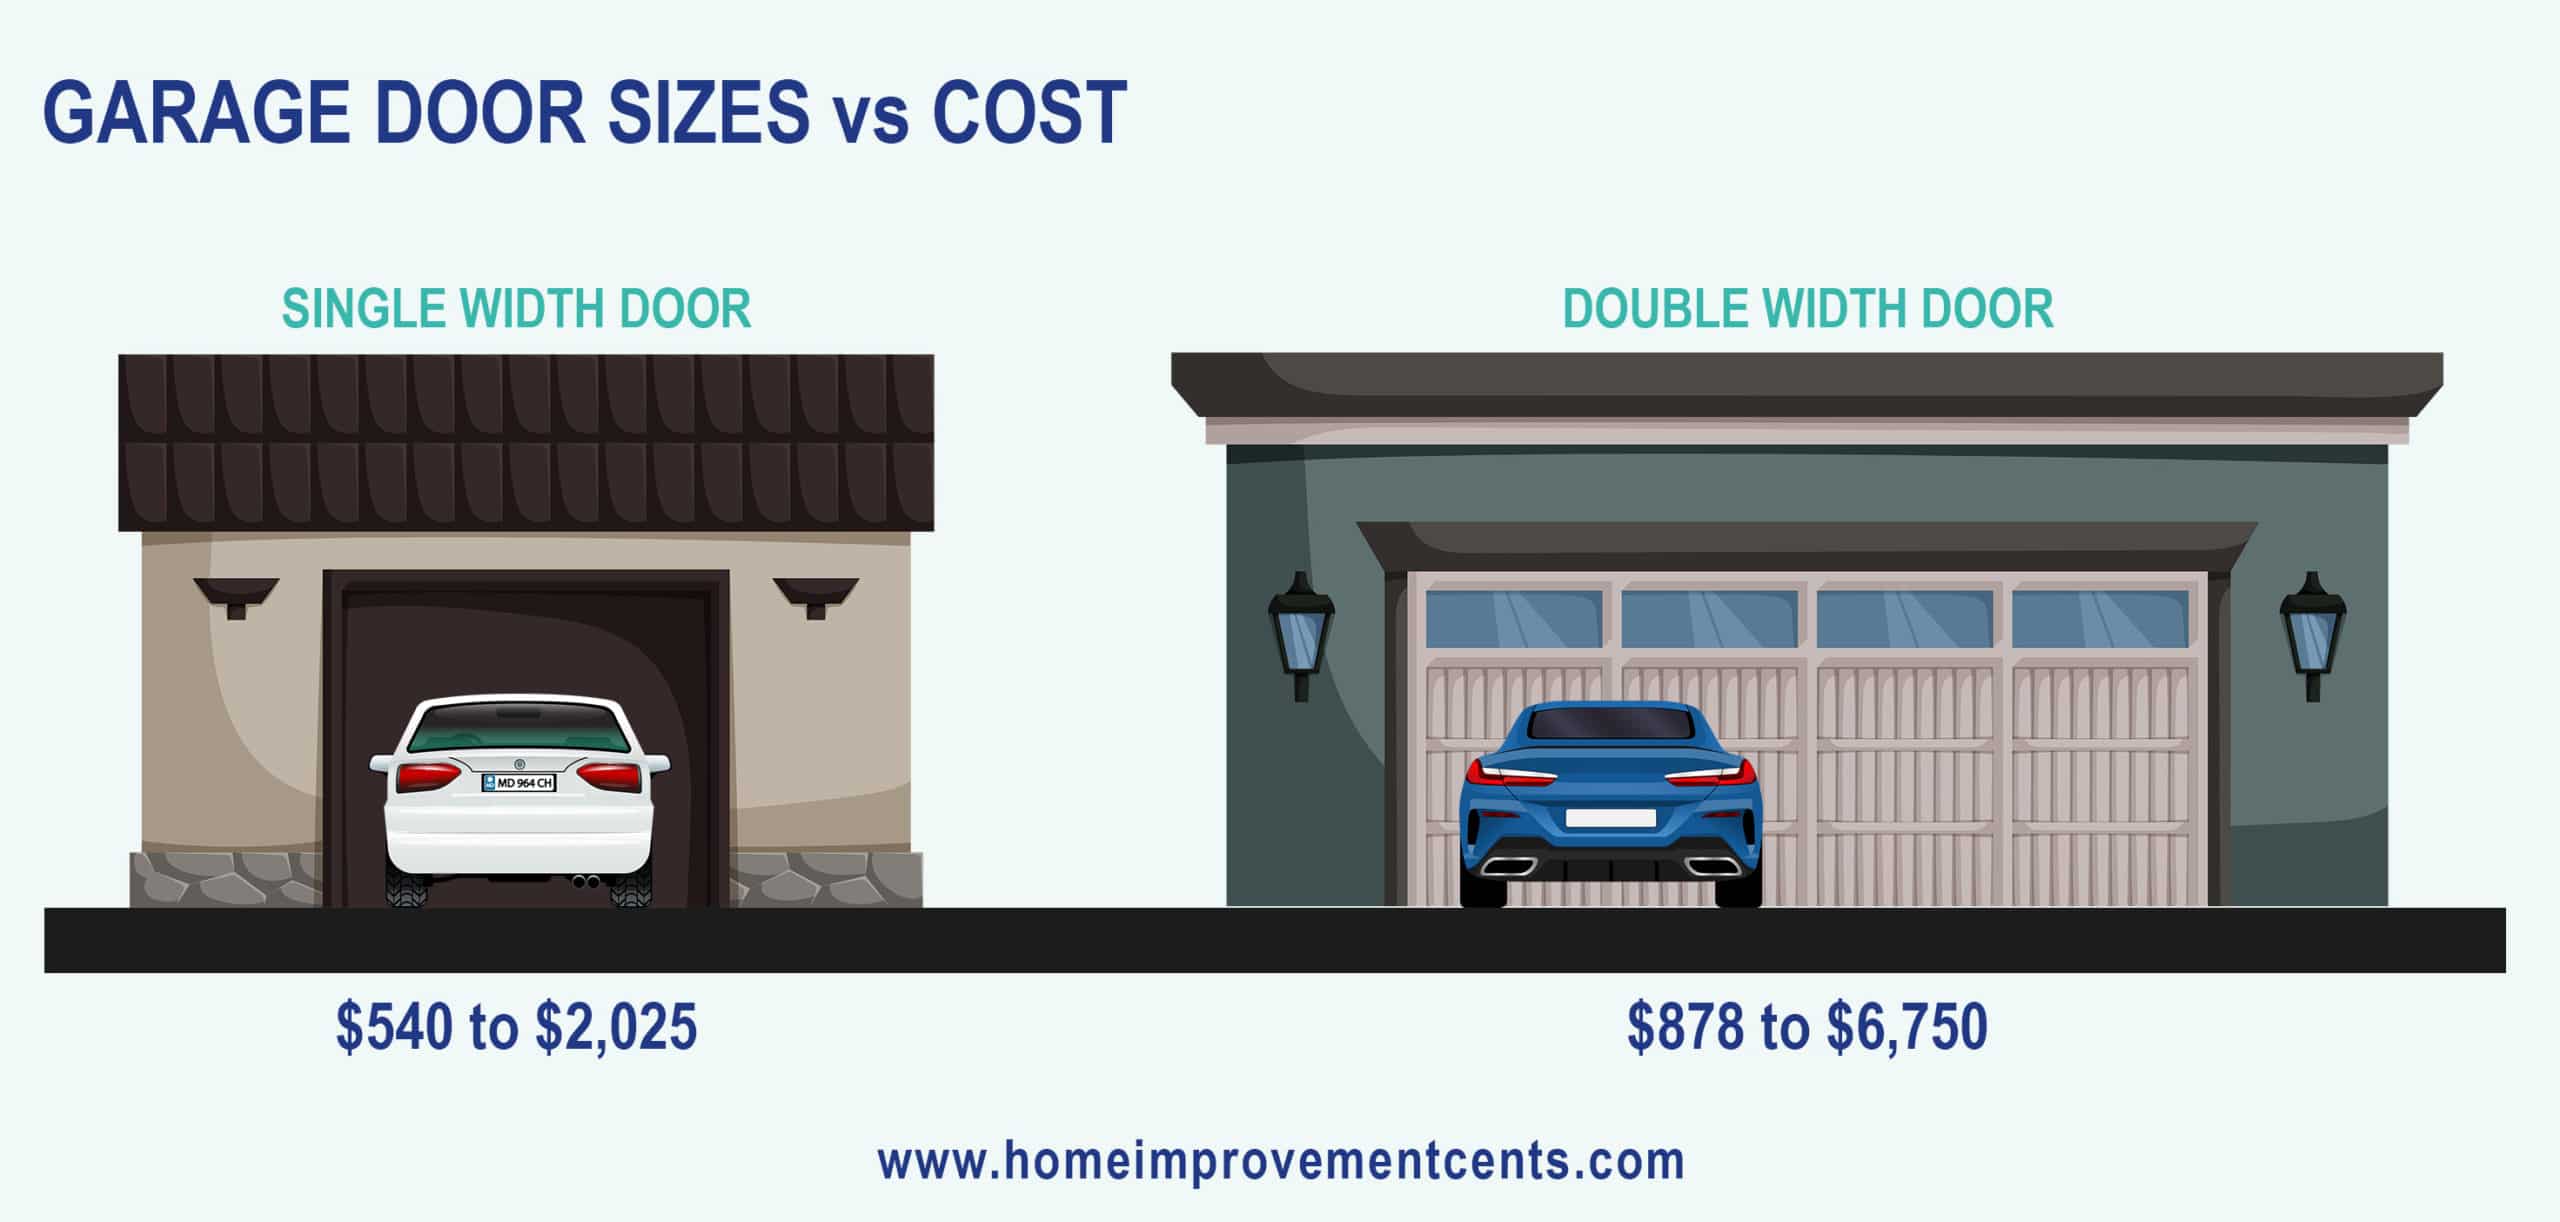 Single car vs double car garage door pricing comparison